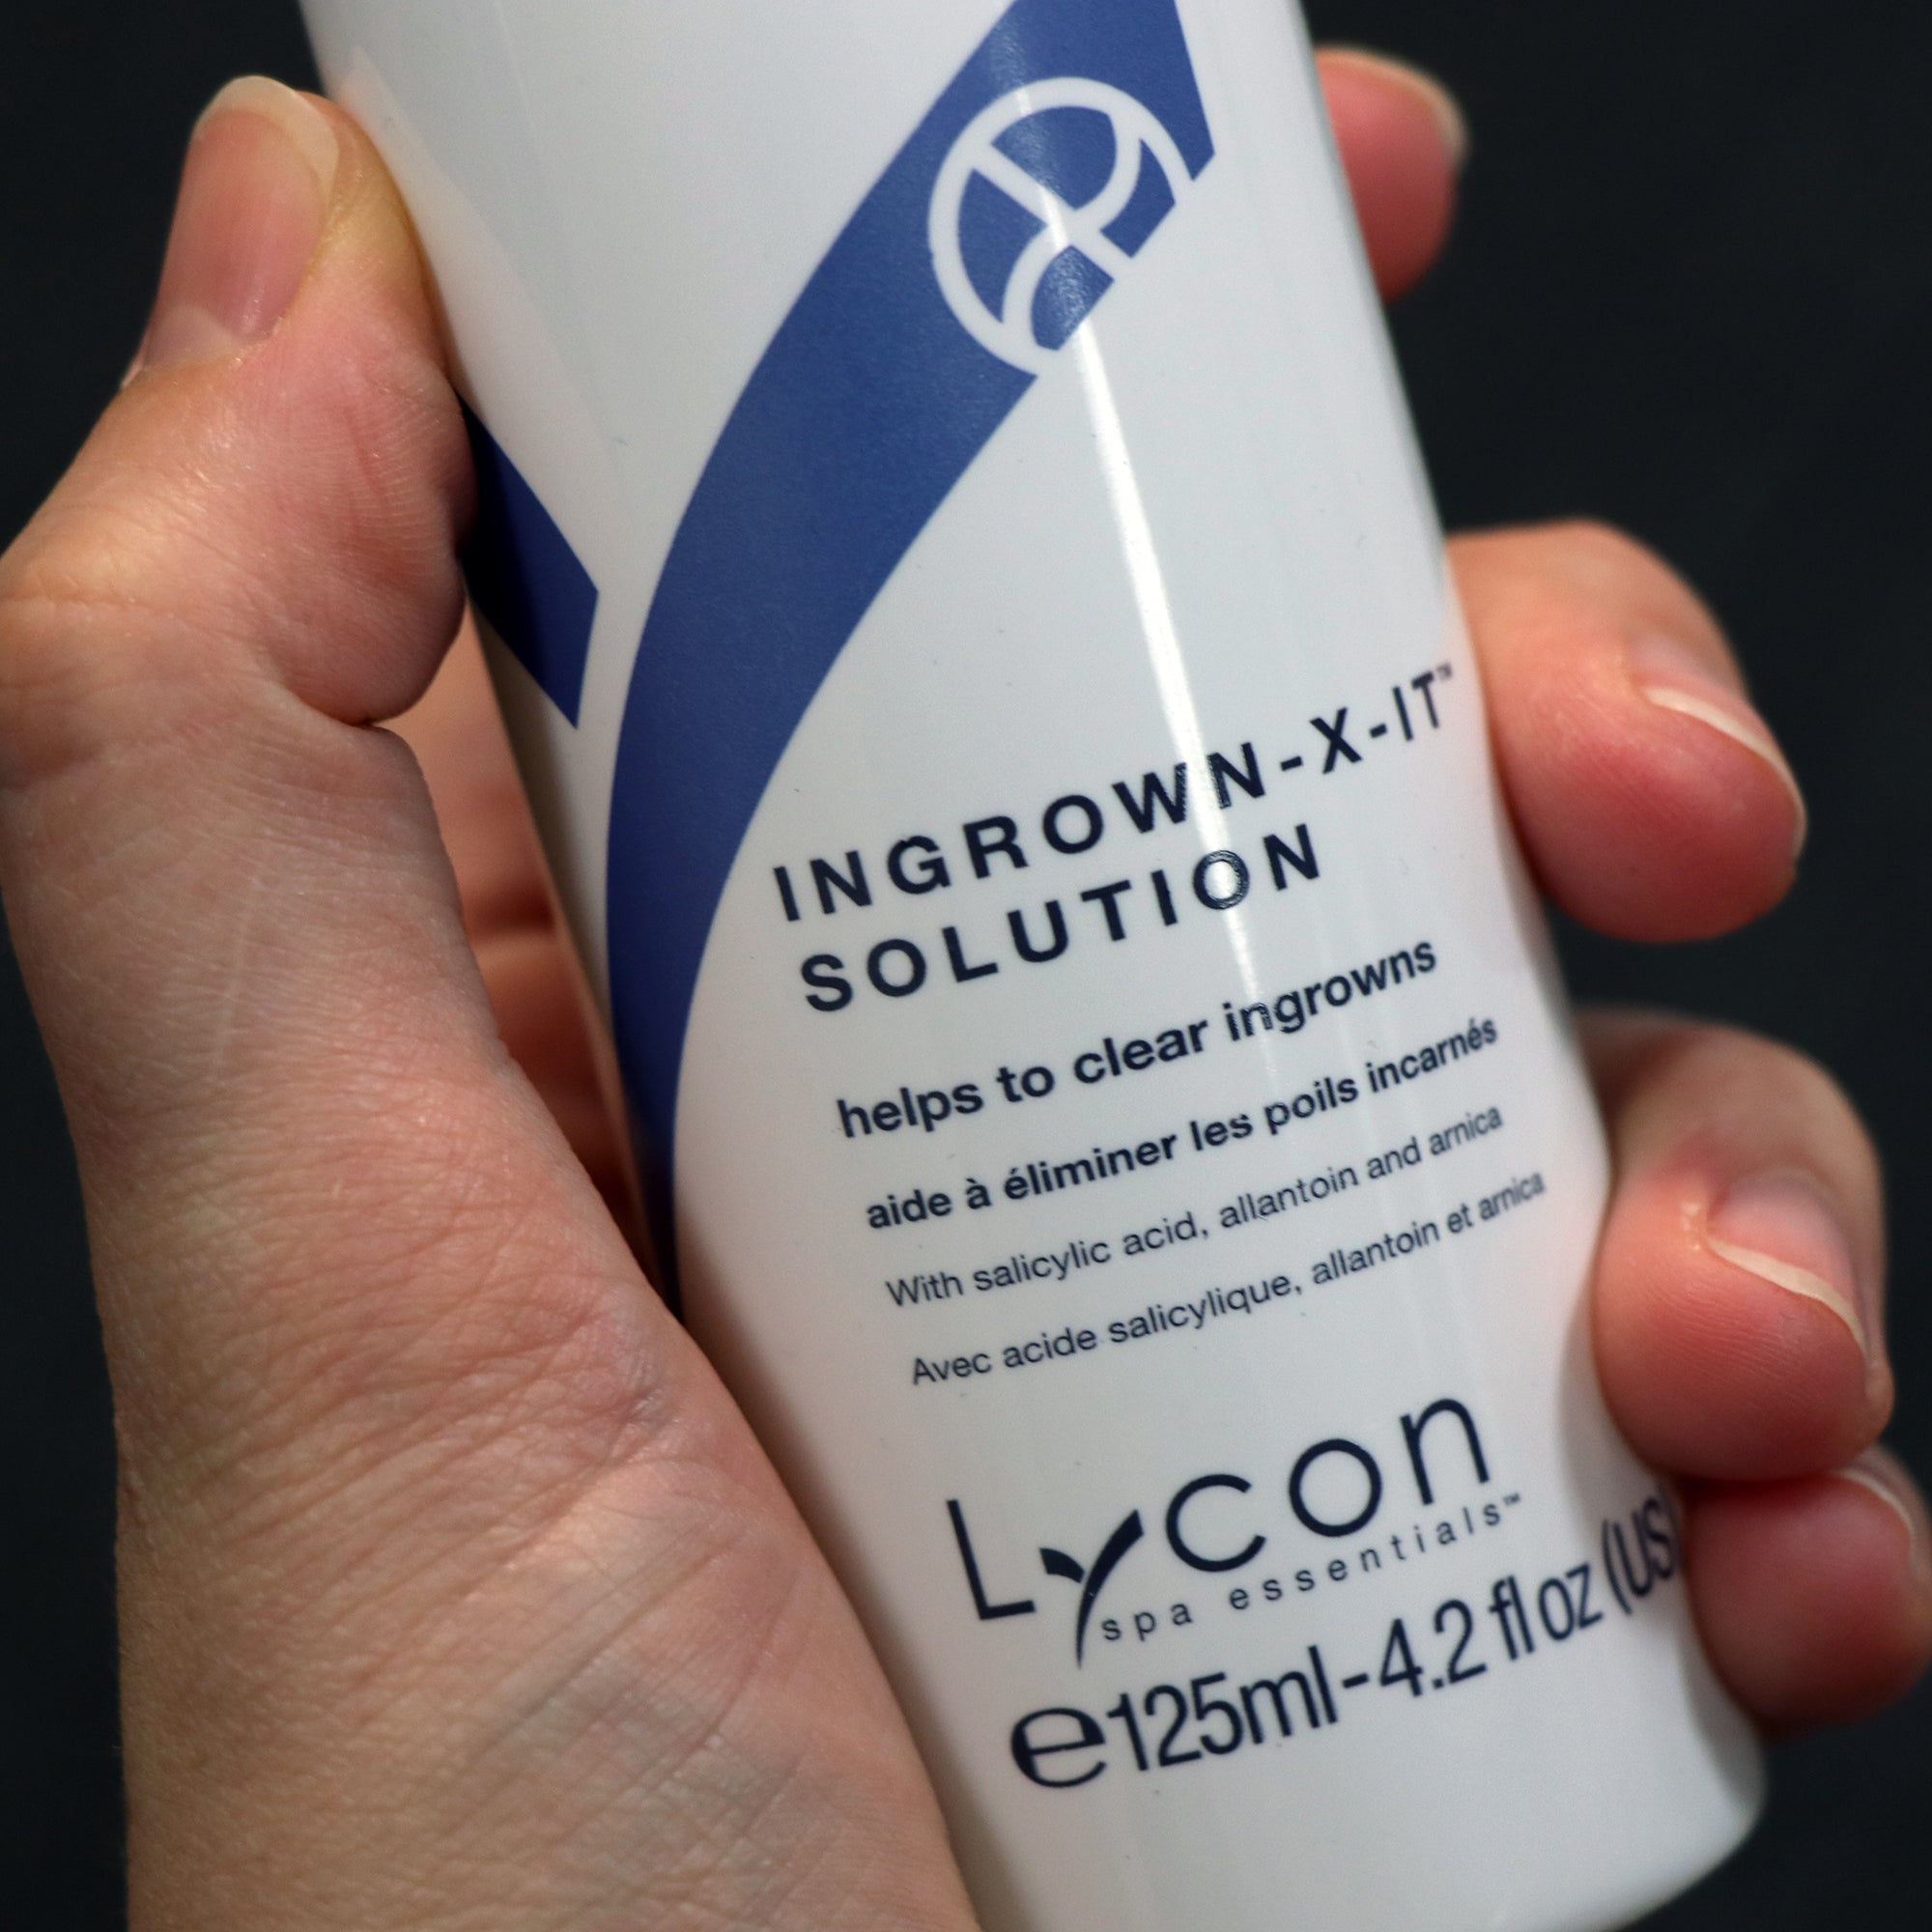 Ingrown-X-it™ Combo for Ingrown Hair Treatment - Retail